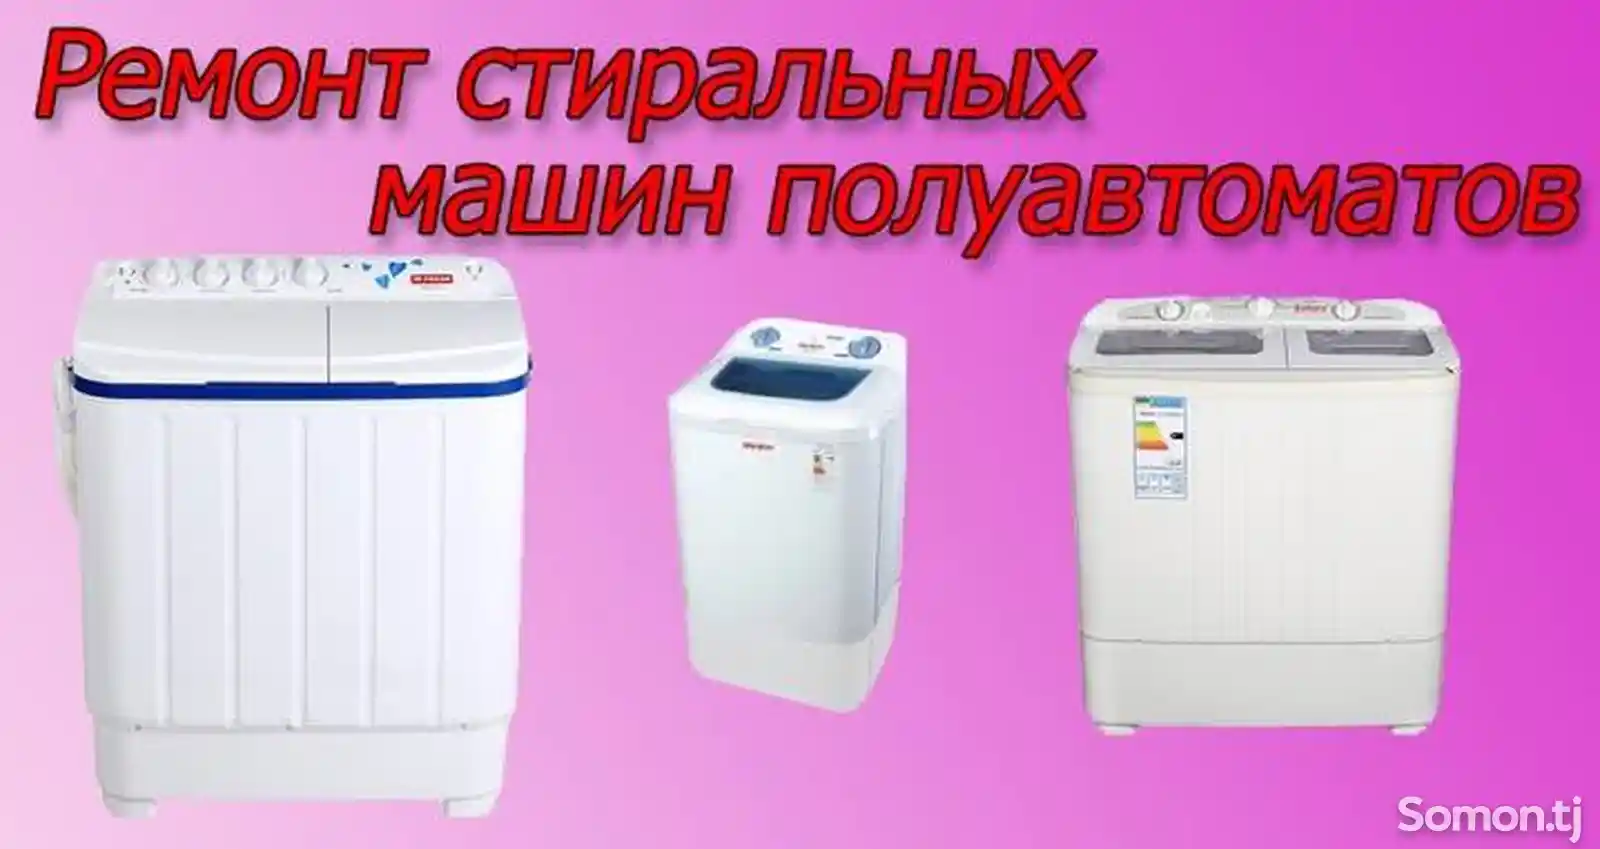 Ремонт стиральных машин полуавтомат-3